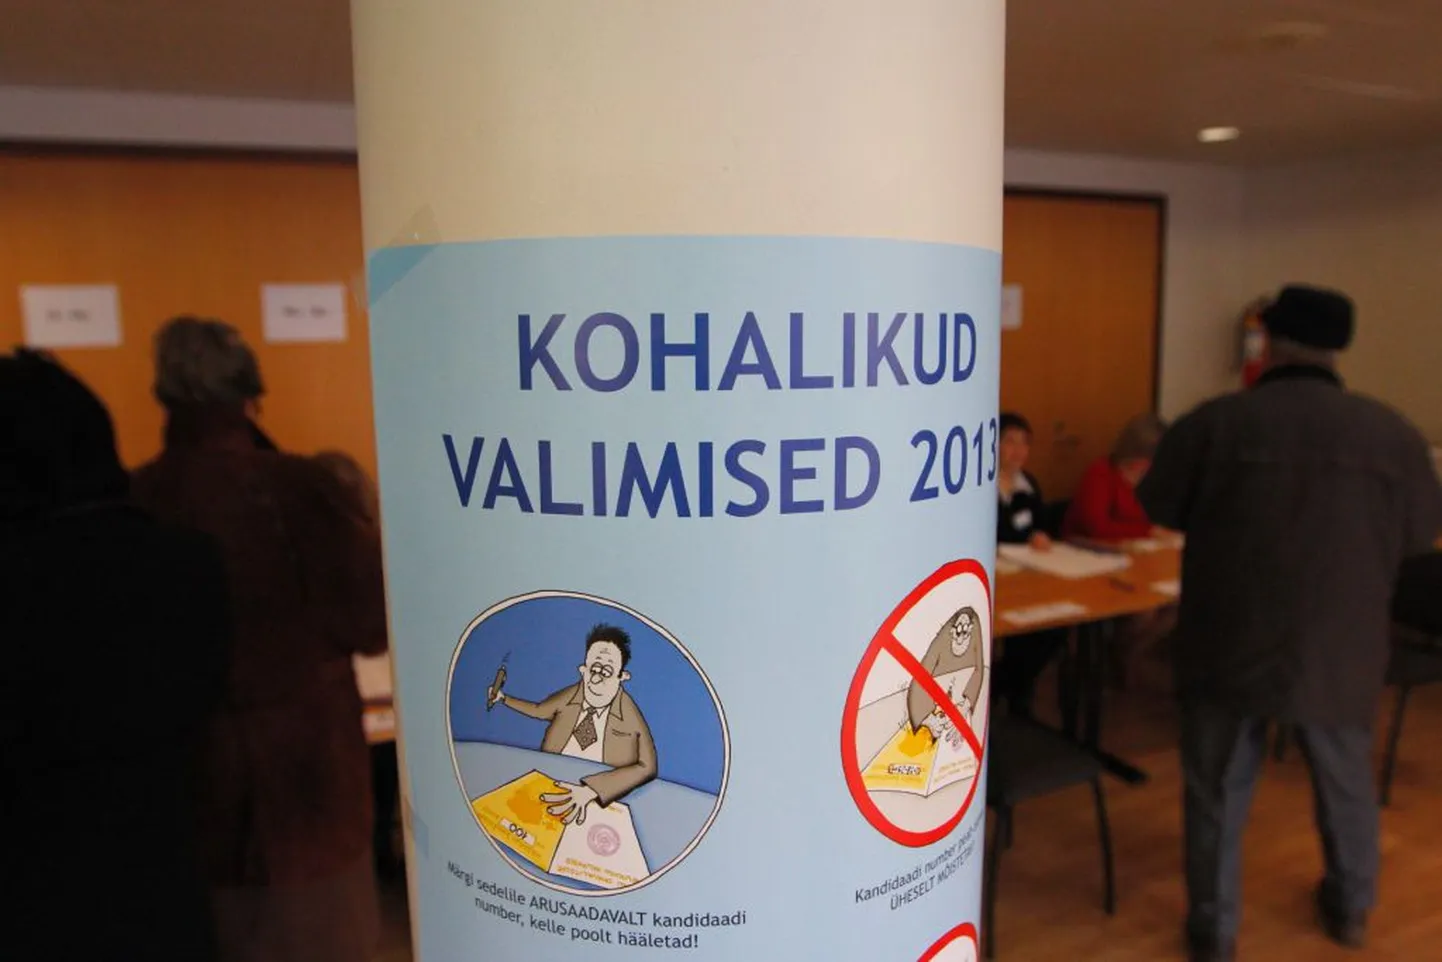 Kohalikud valimised 2013. Valga valimisjaoskond kultuuri- ja huvialakeskuses.